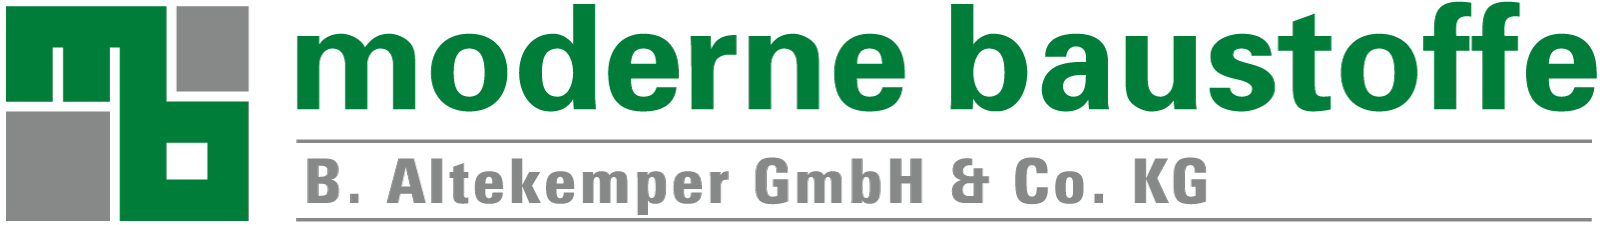 Logo - Moderne Baustoffe - B. Altekemper GmbH & Co. KG